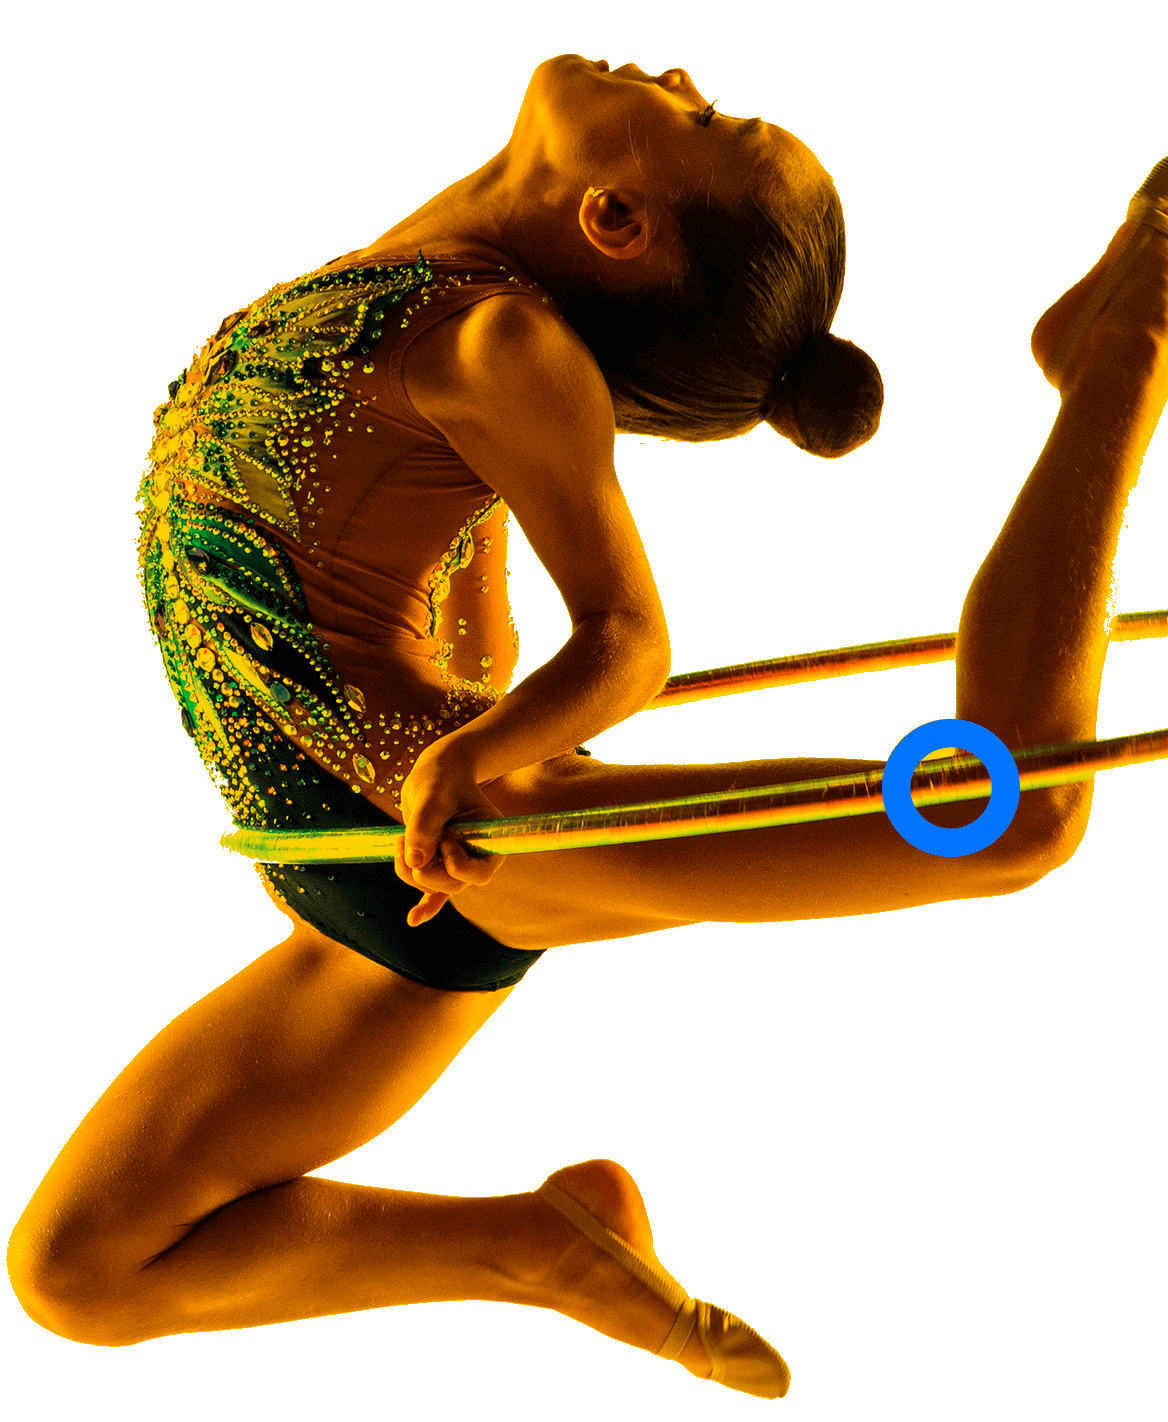 En la foto, una gimnasta ejecuta una rutina con un aro. Contorsiona sus piernas y mira hacia arriba. 